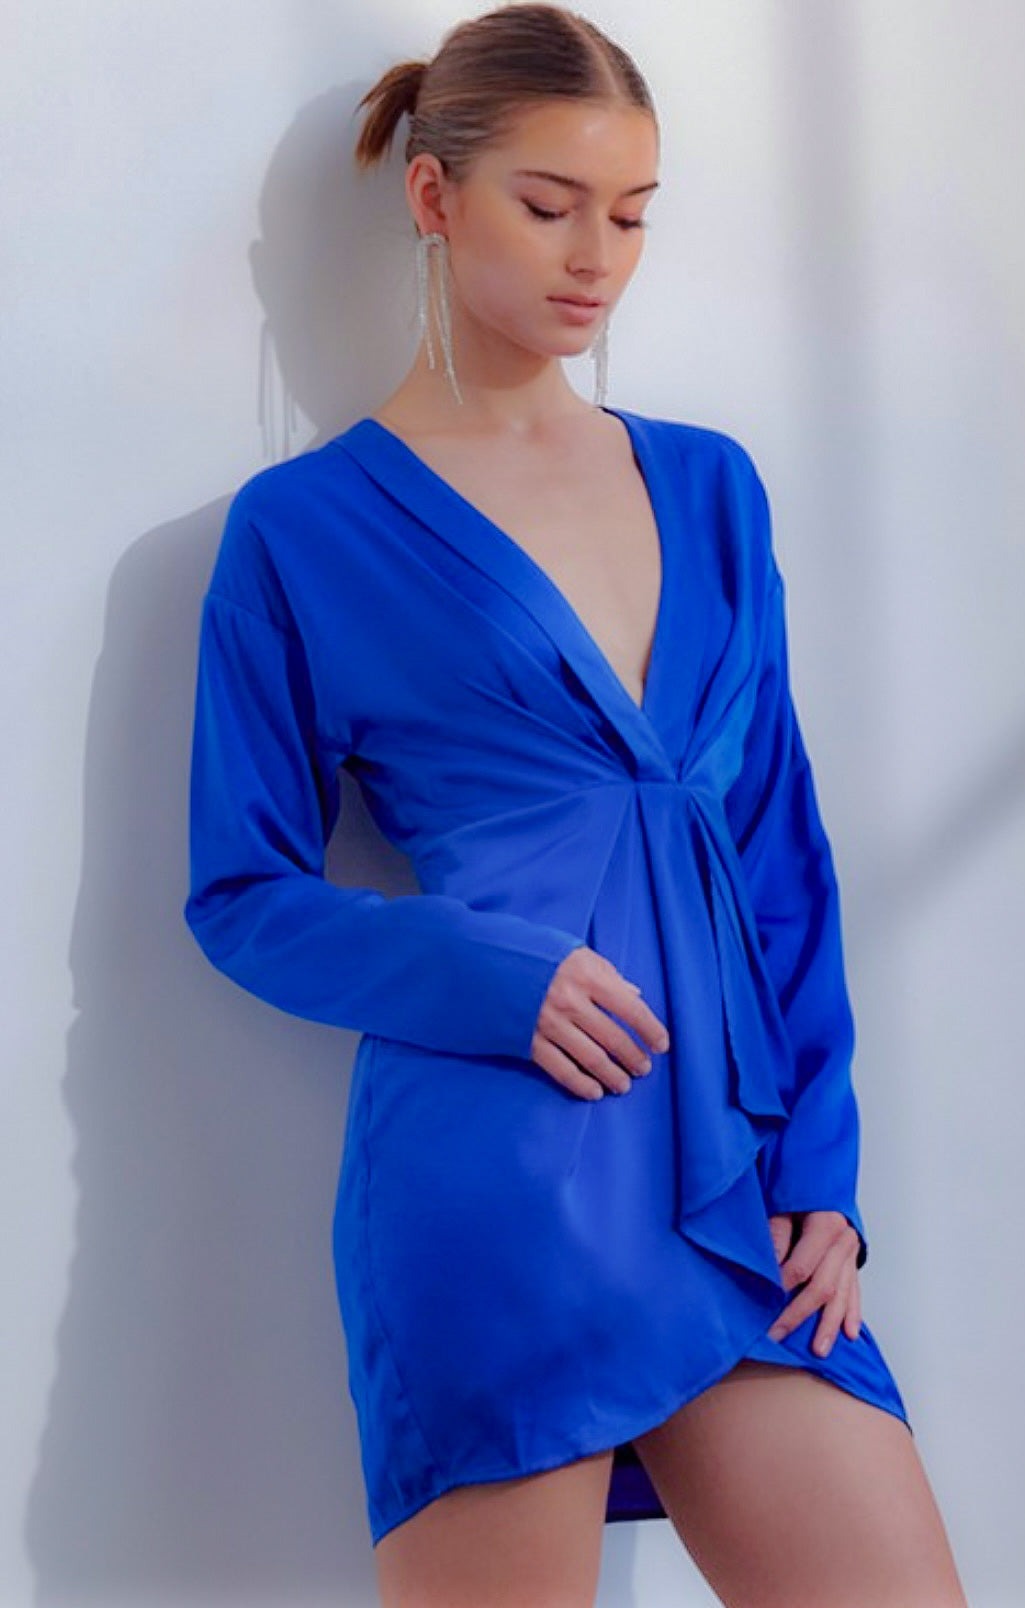 royal blue mini dress